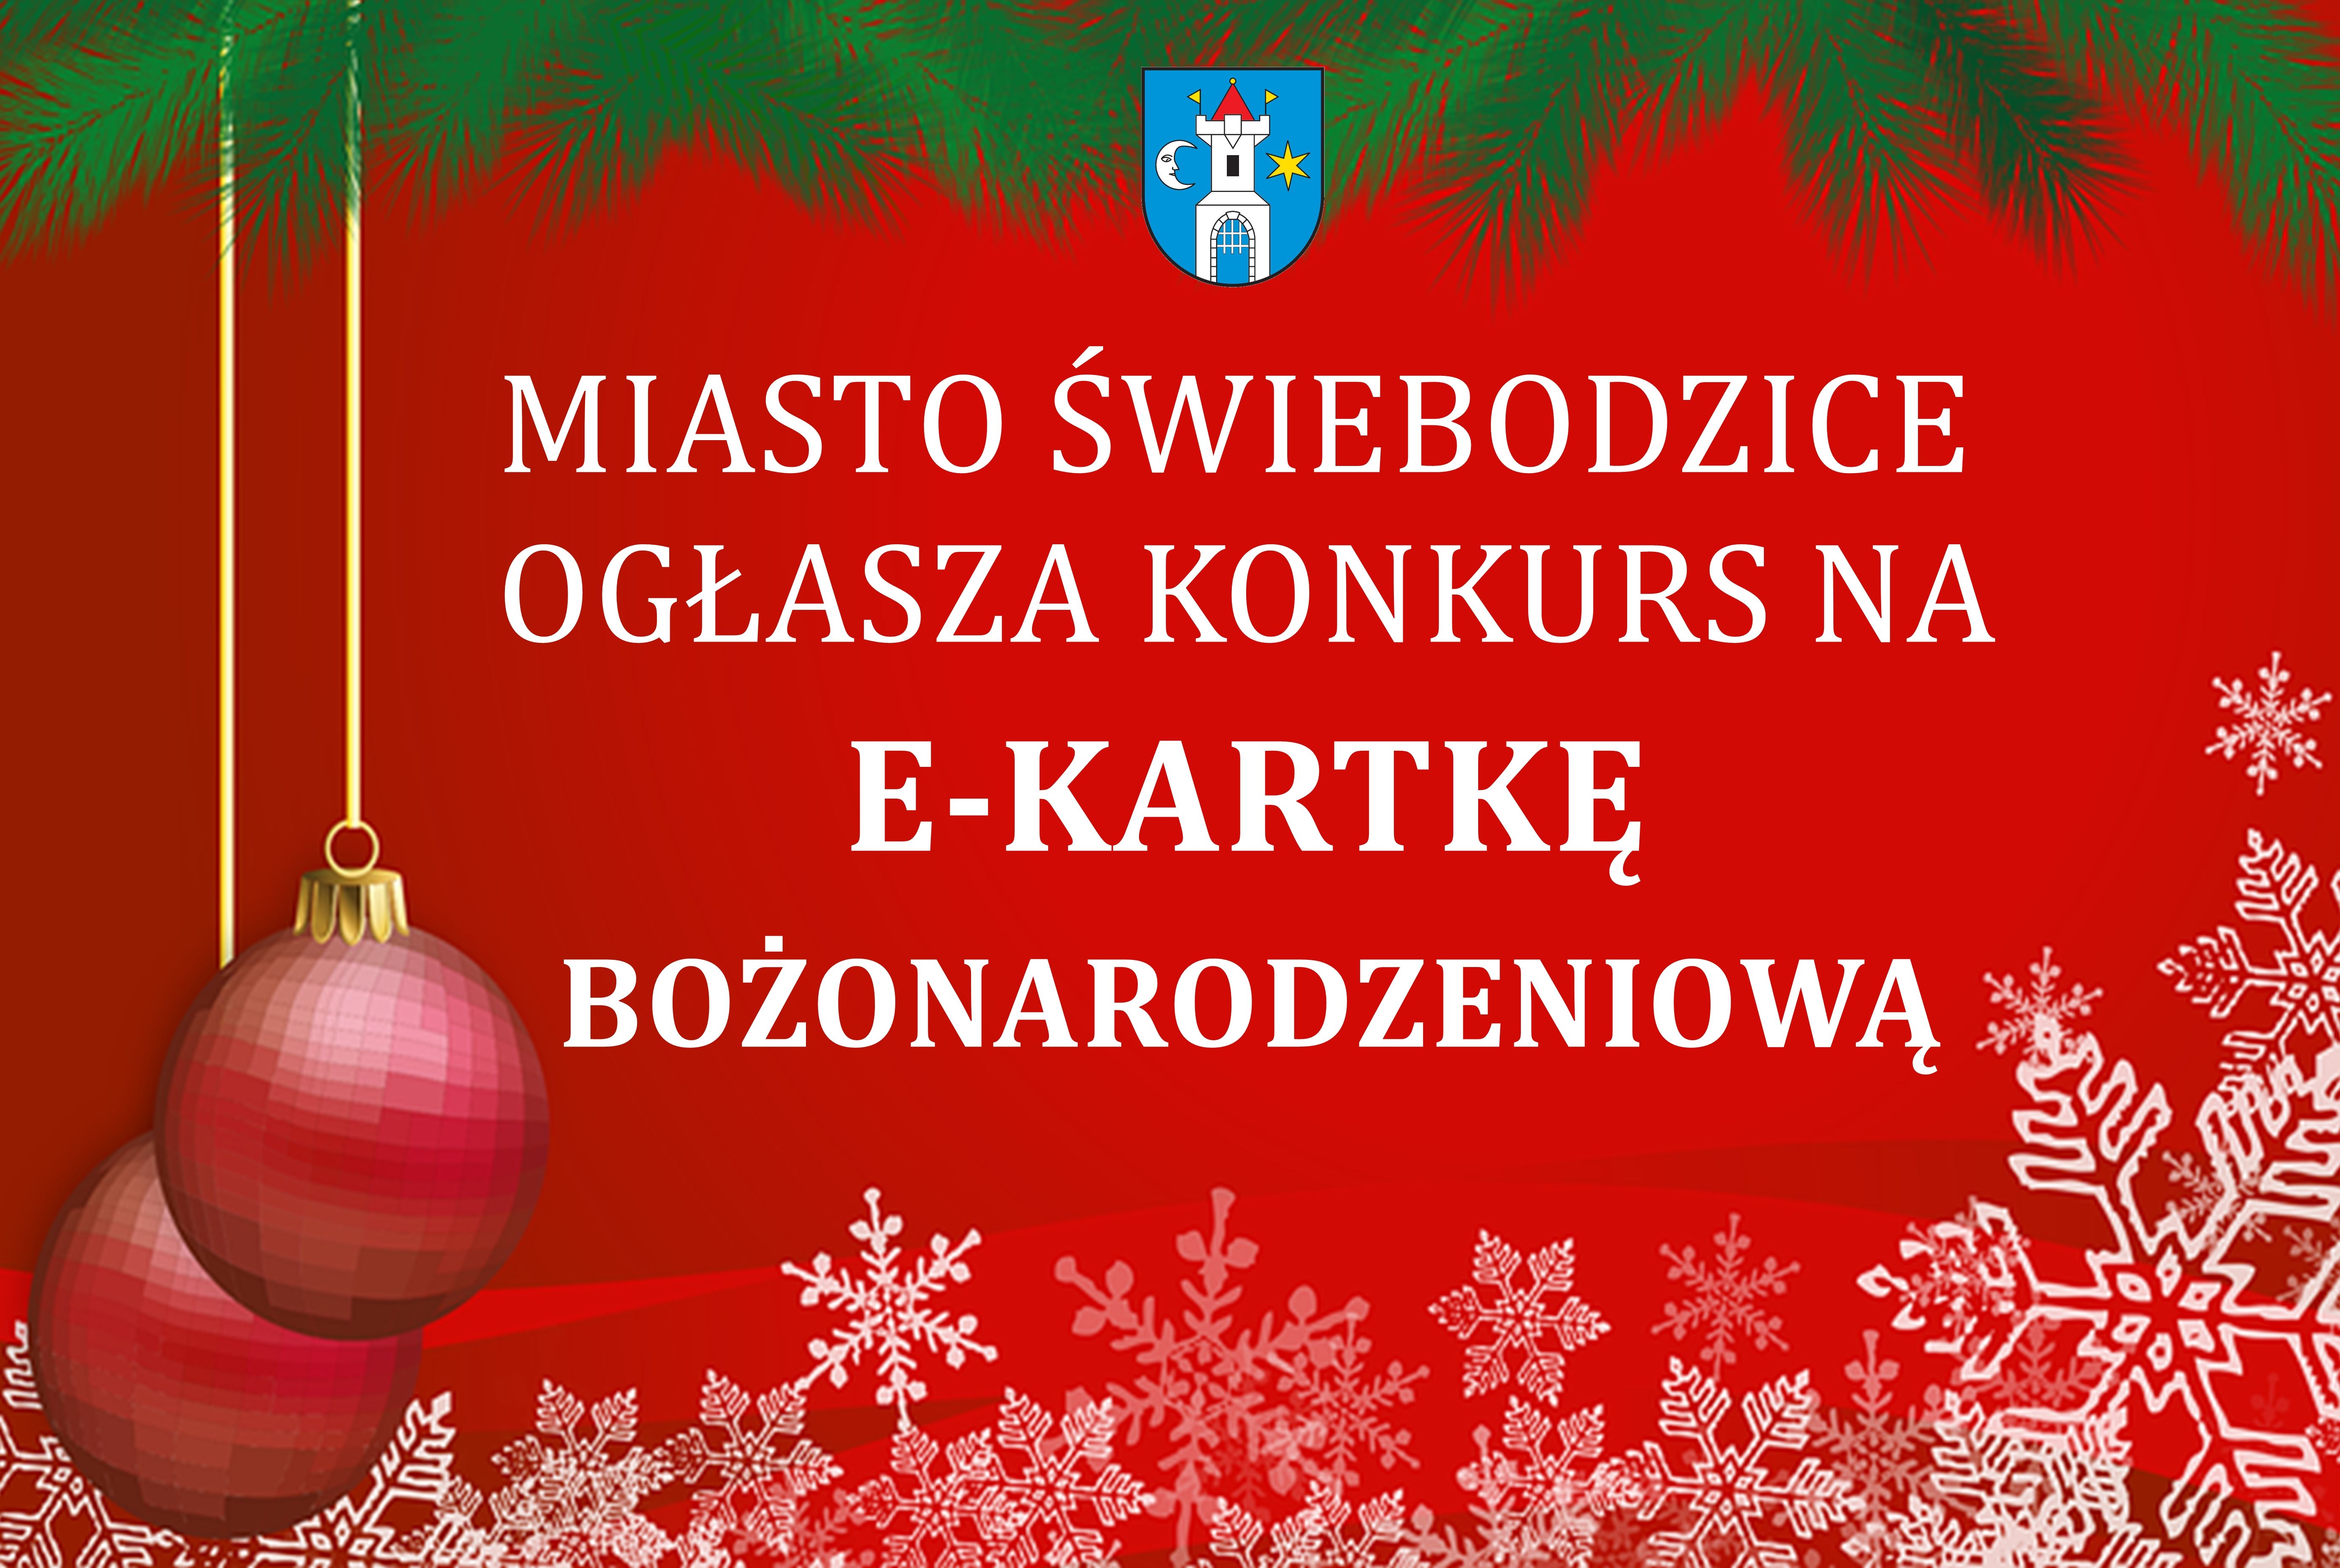 Miasto Świebodzice ogłasza konkurs na e-kartkę bożonarodzeniową.